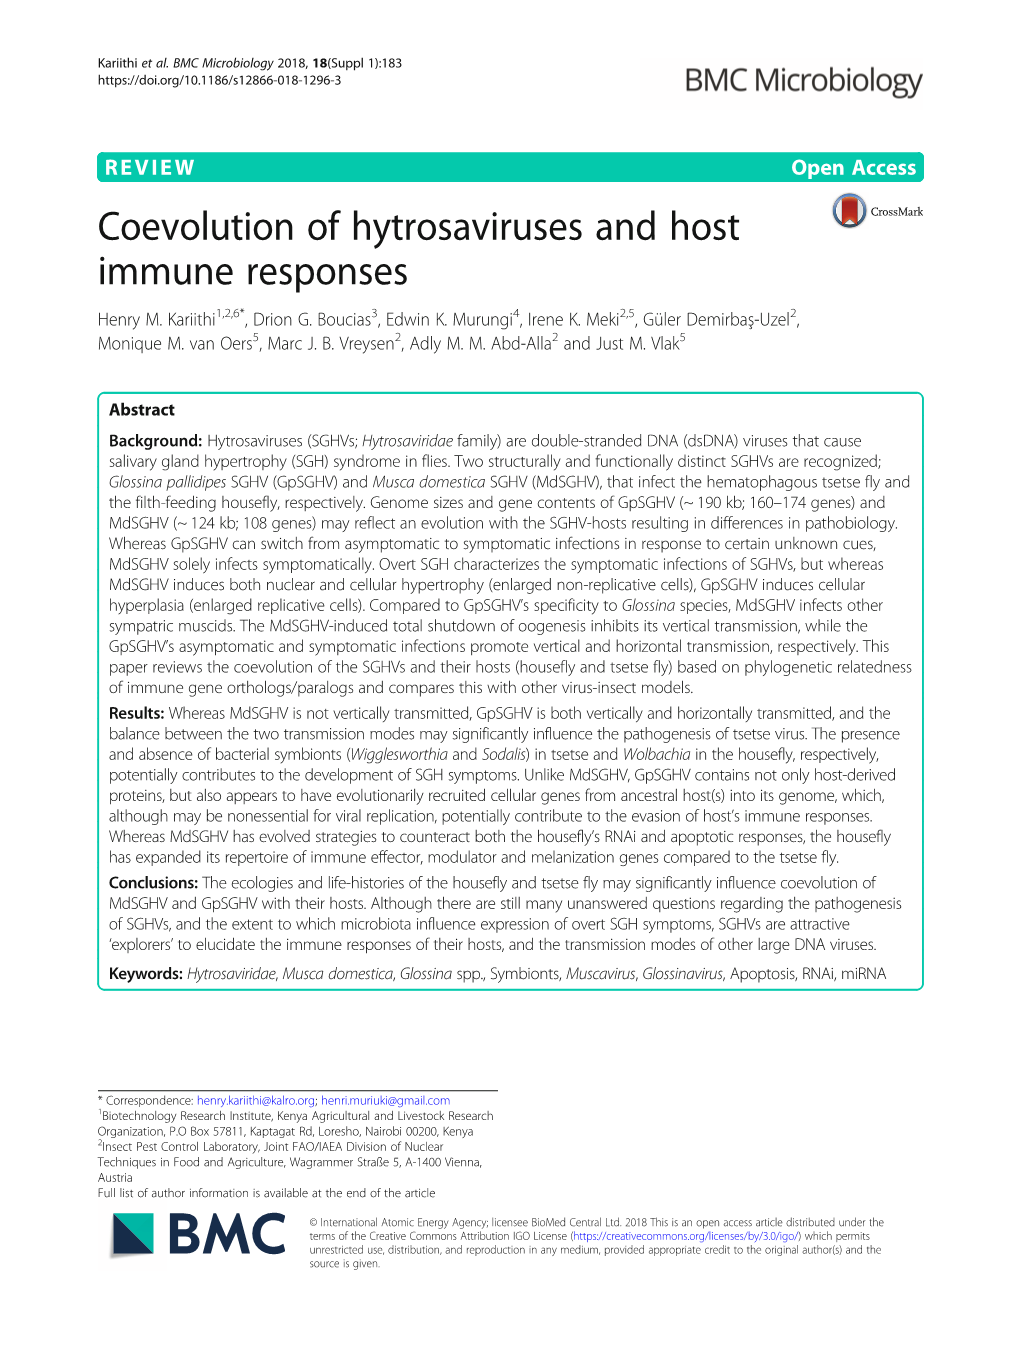 Coevolution of Hytrosaviruses and Host Immune Responses Henry M